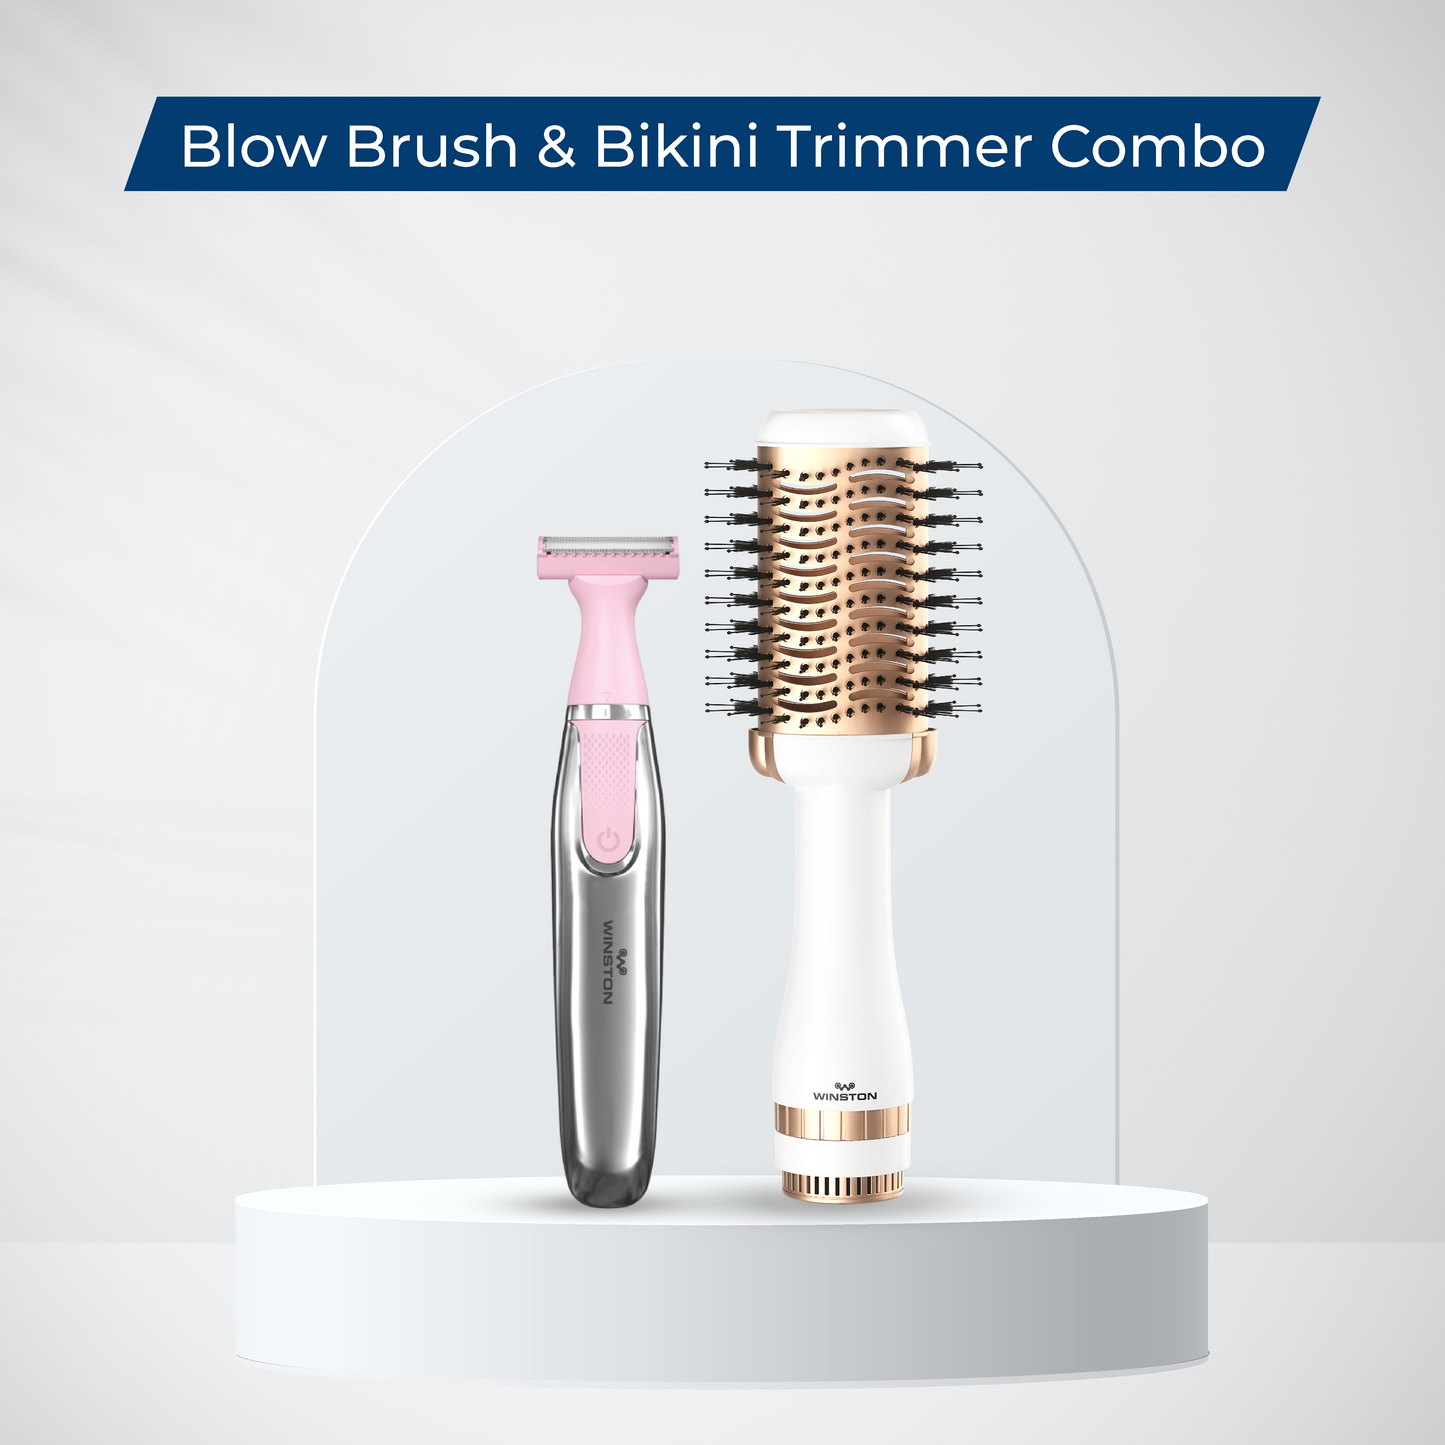 Blow Brush & Bikini Trimmer Combo